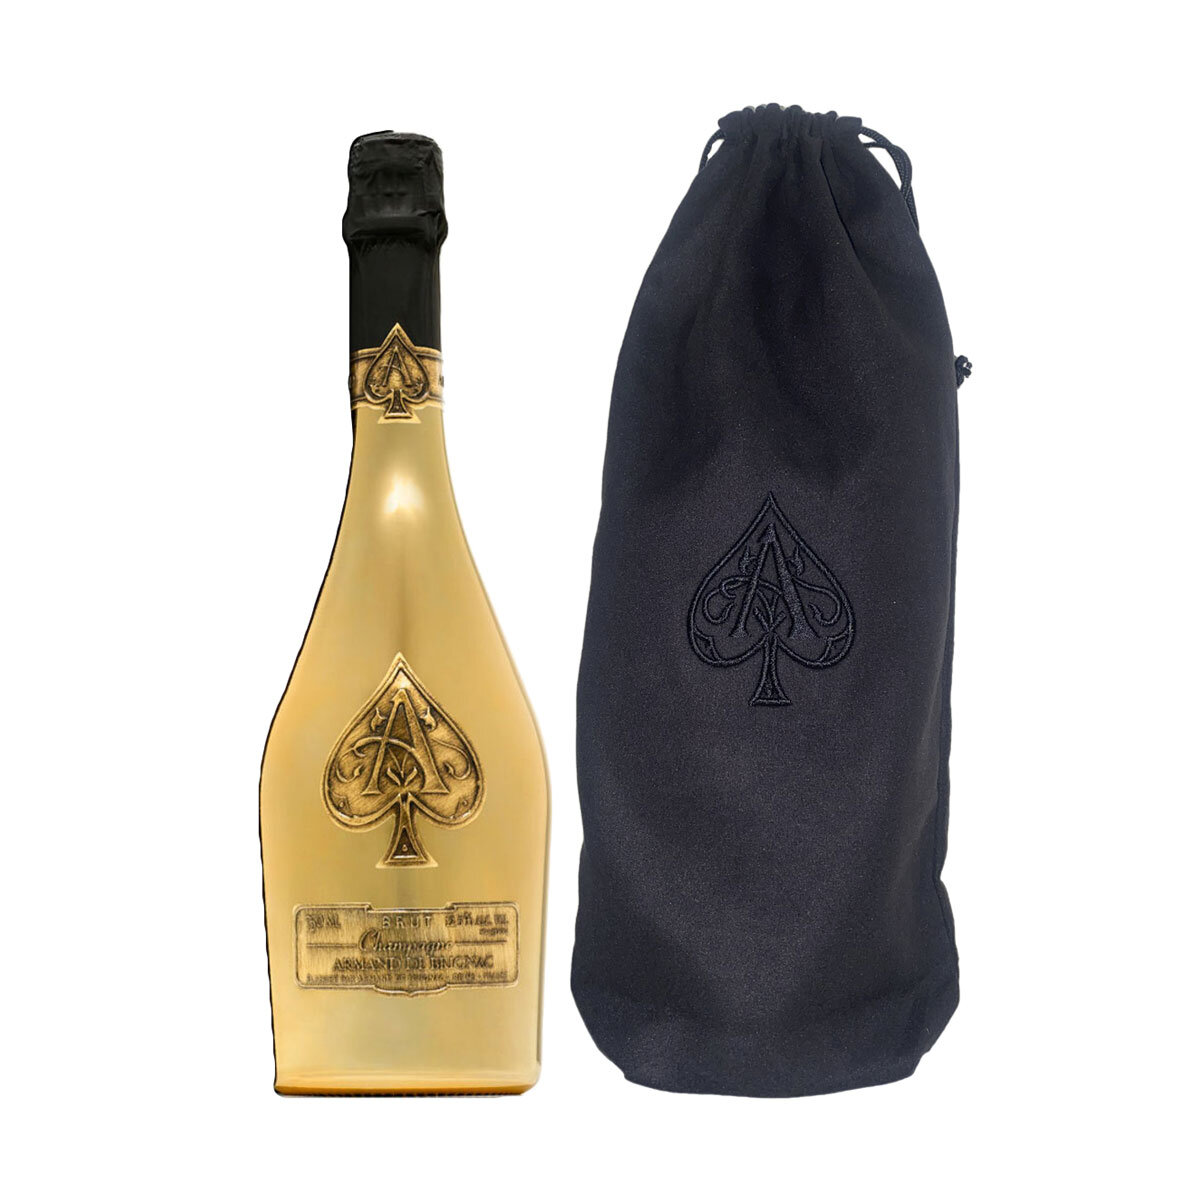 Armand de Brignac Ace of Spades Brut Gold Champagne NV